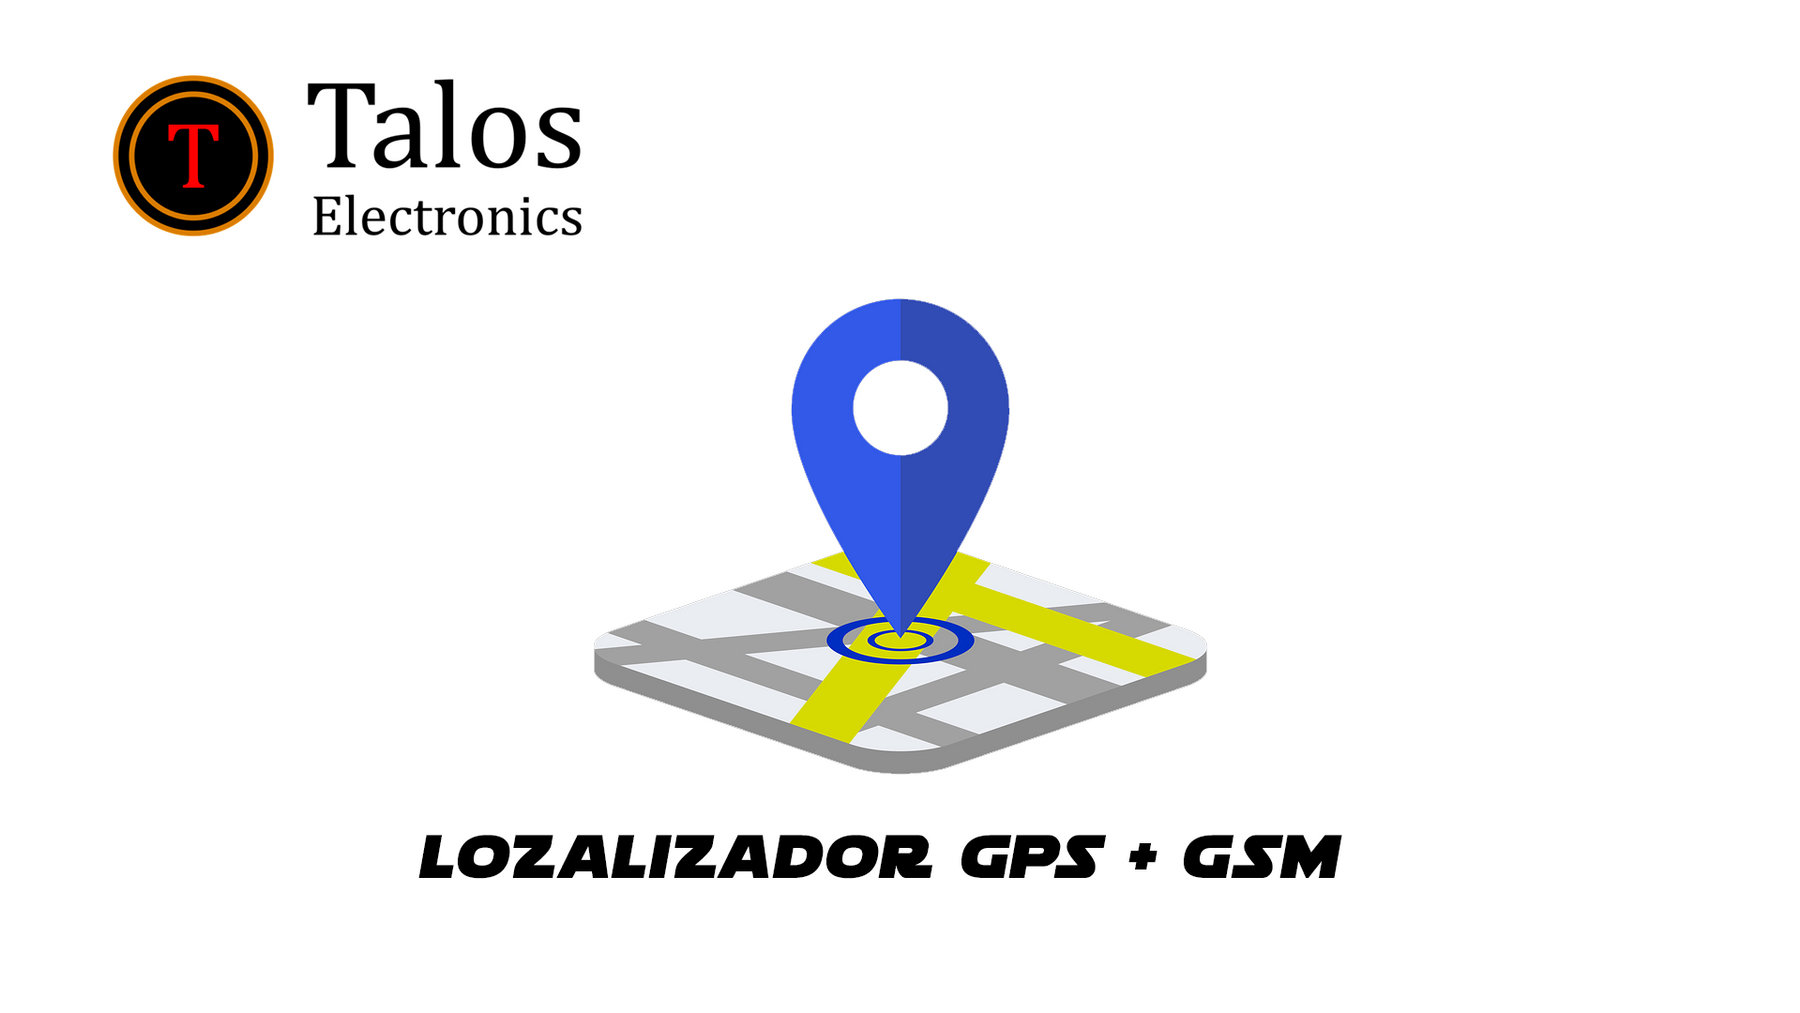 Localizador GPS + GSM